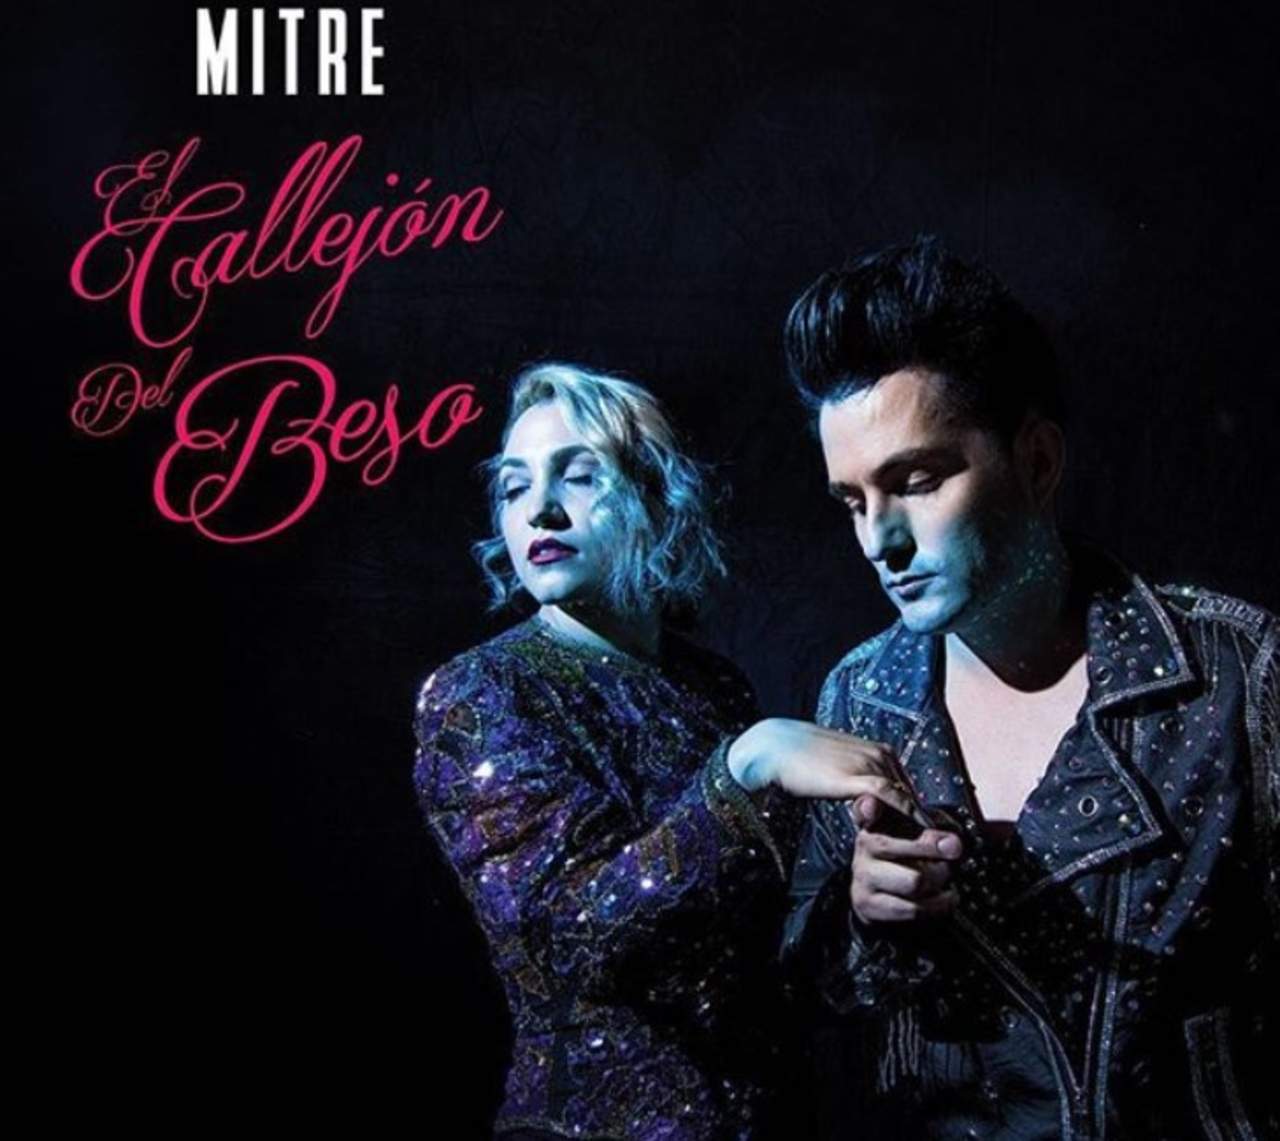 Mitre presentó su primer disco, “El callejón del beso”. (ESPECIAL)